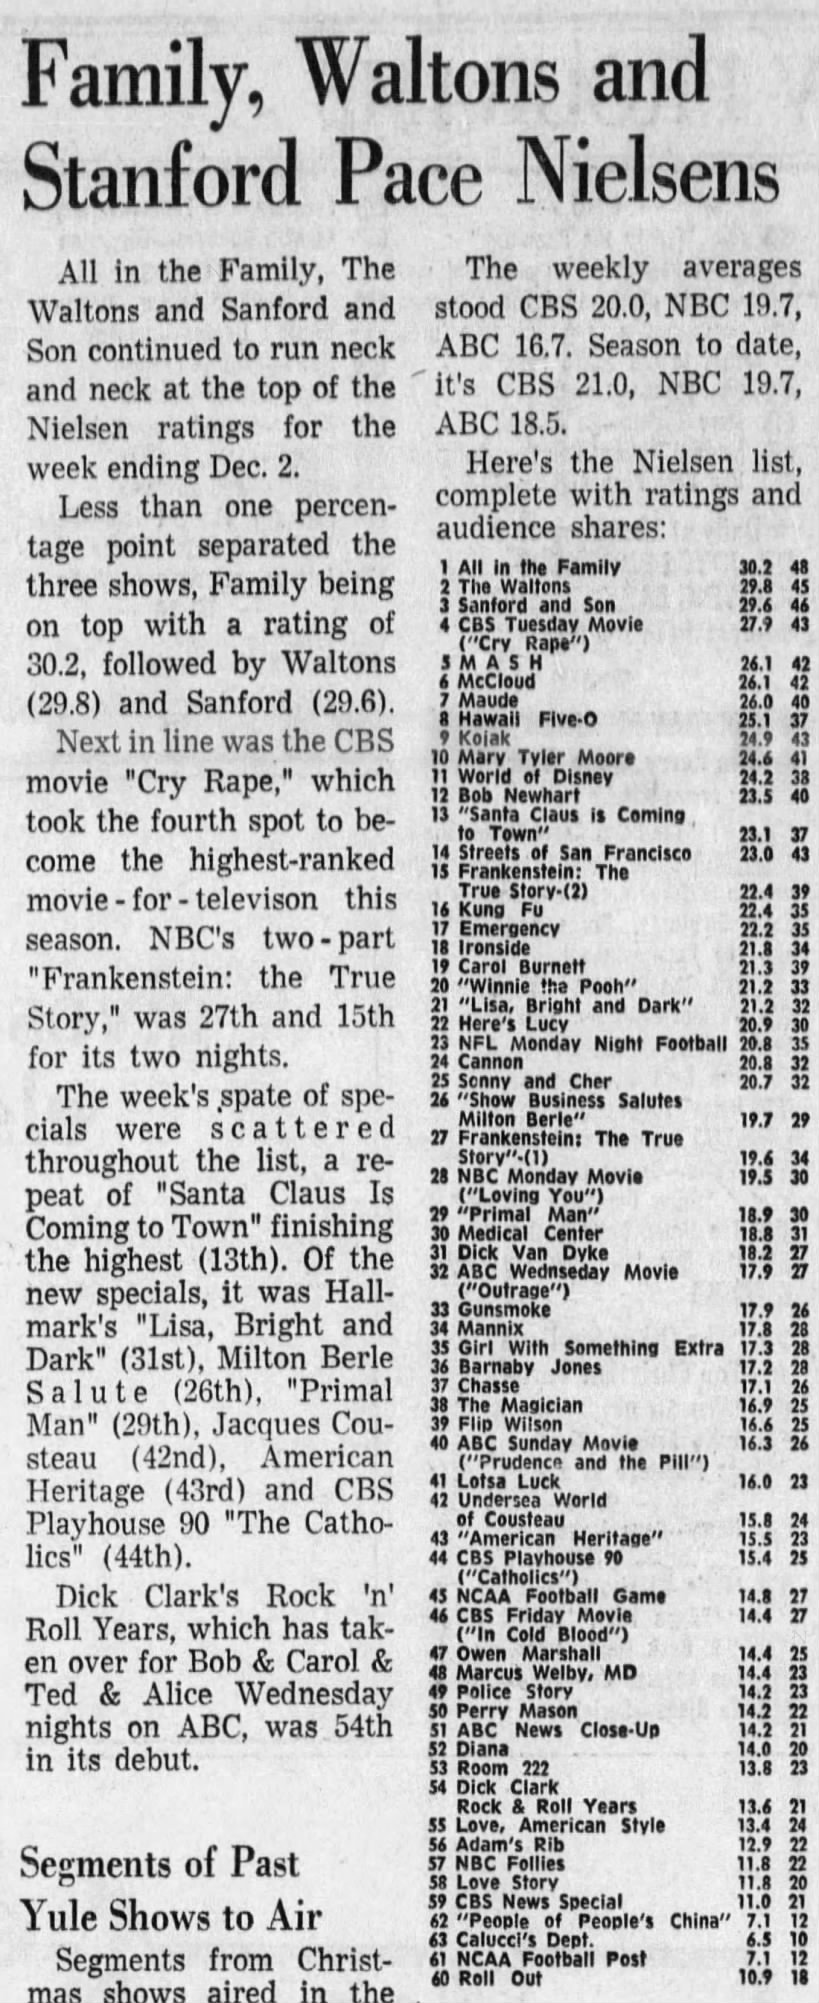 Nielsen ratings week of November 26th - December 2nd, 1973